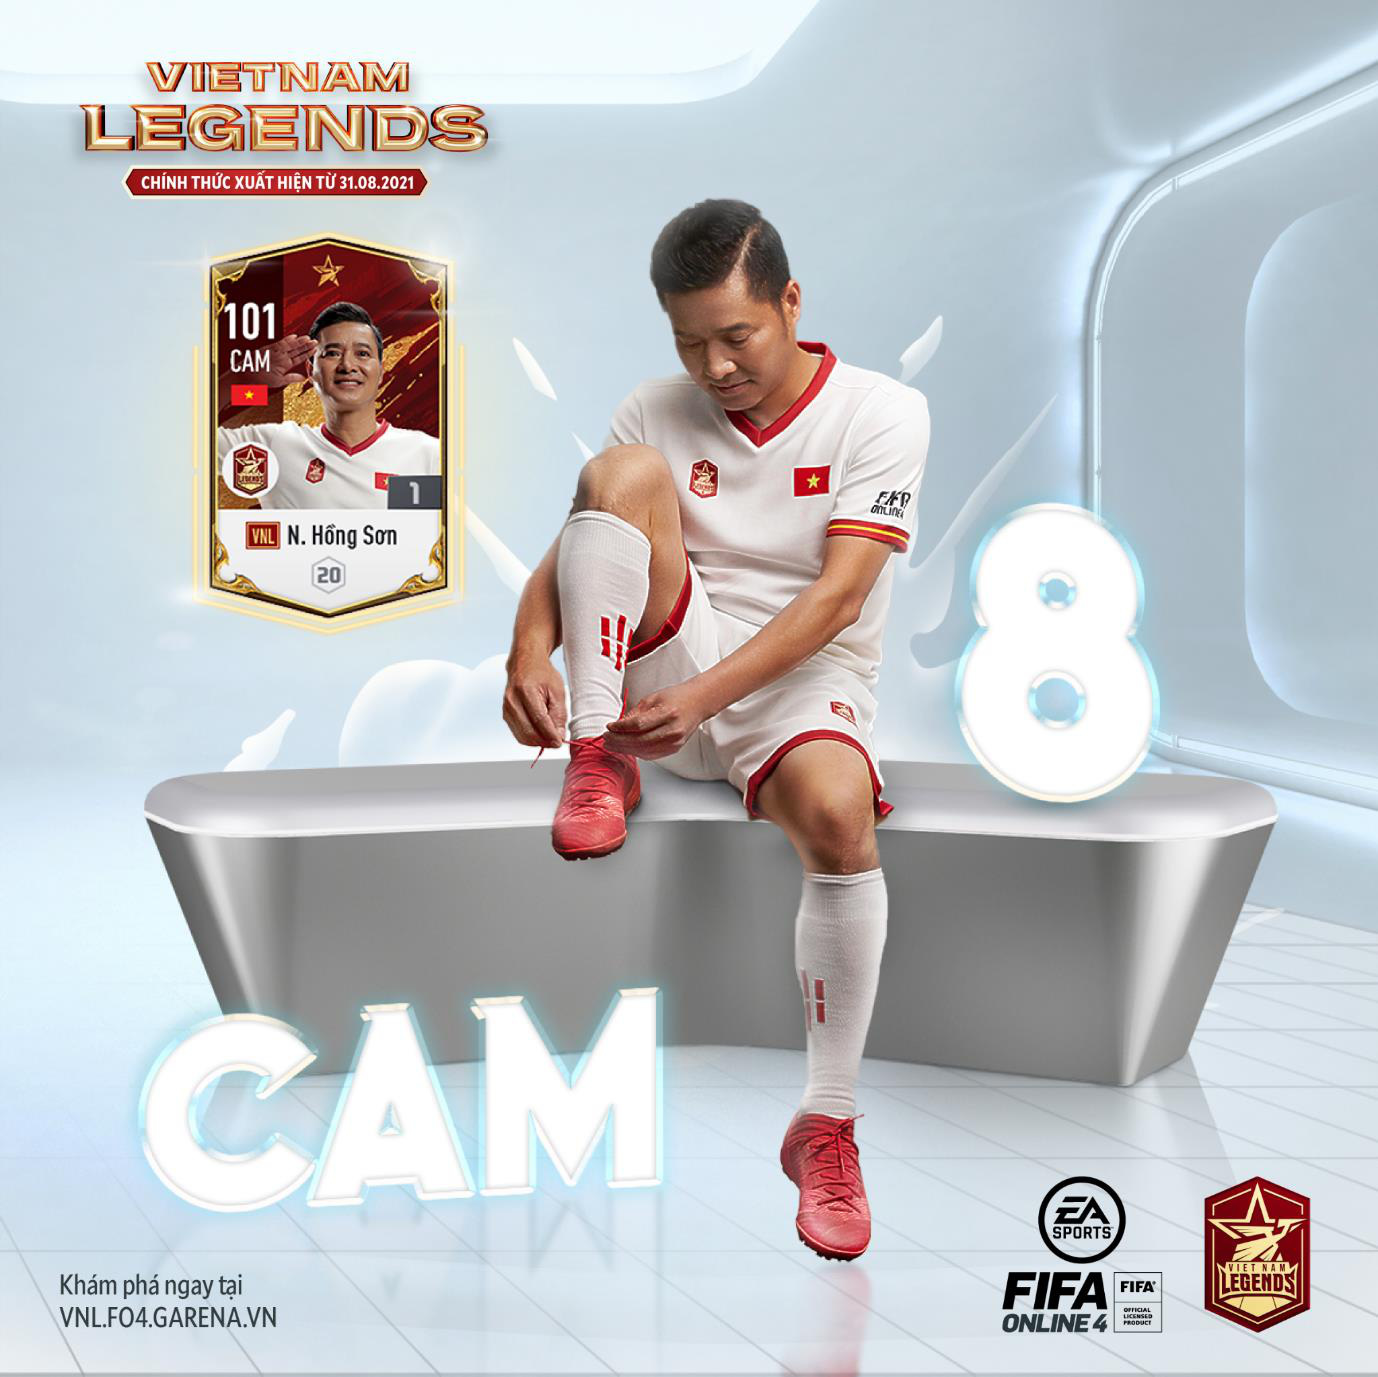 Nguyễn Hồng Sơn - huyền thoại được yêu mến bậc nhất bóng đá Việt Nam được tái hiện trong FIFA Online 4 như thế nào? - Ảnh 2.